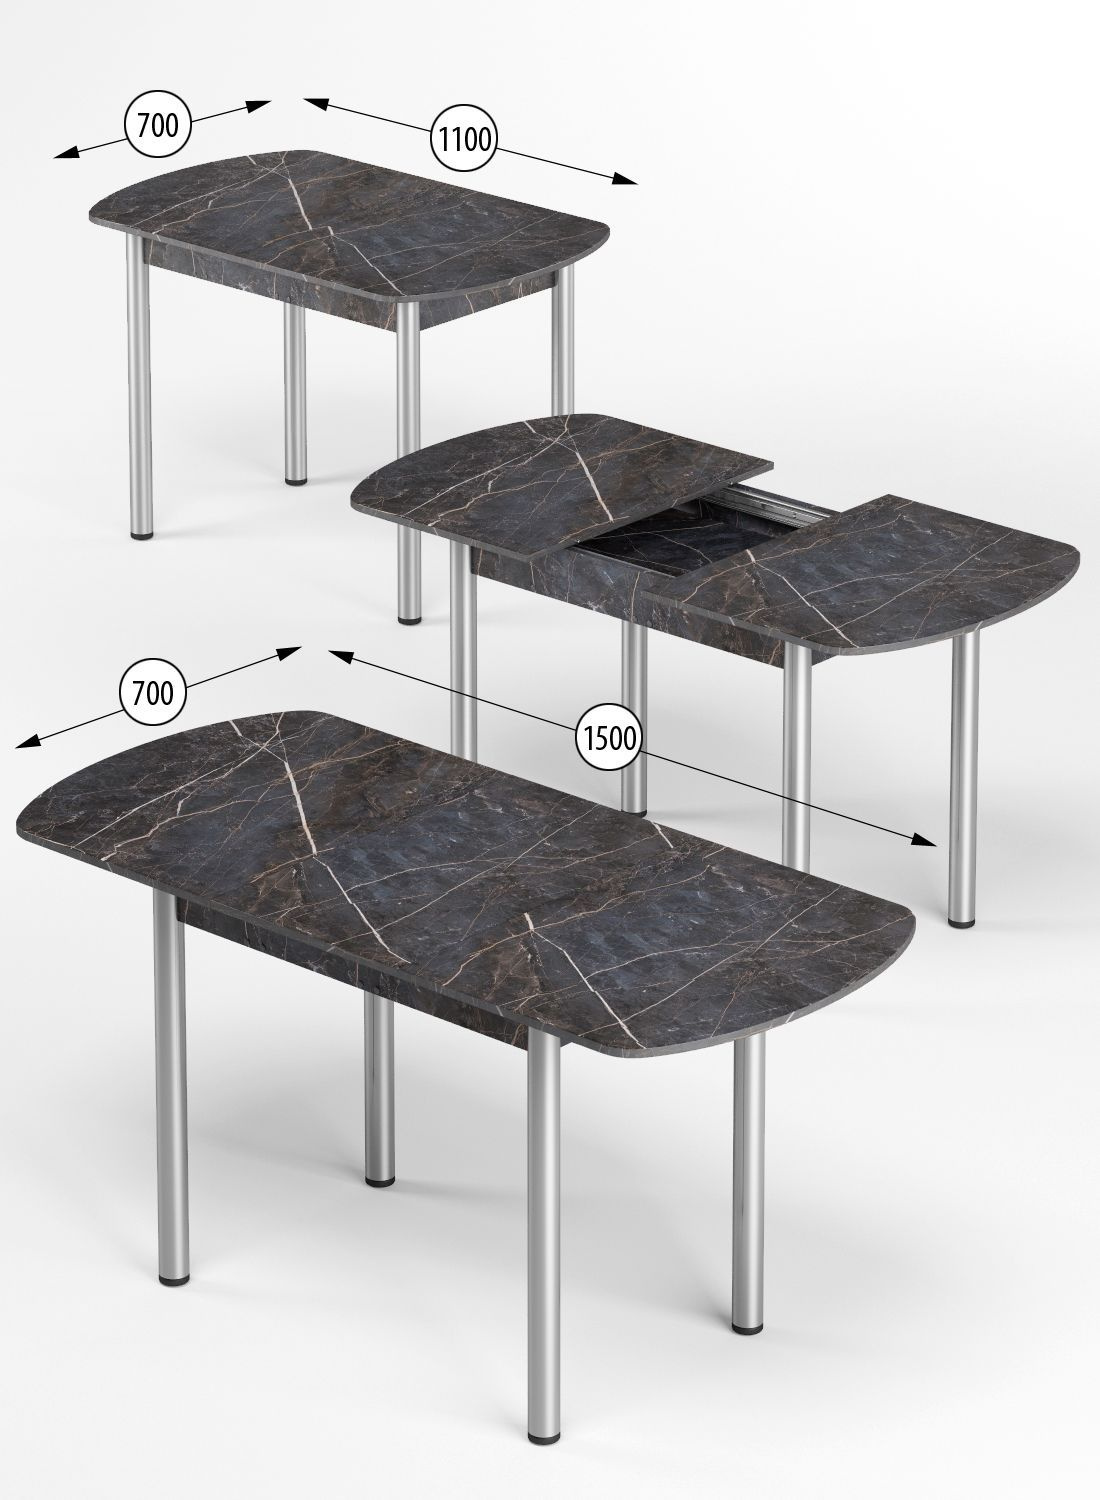 Стол обеденный кухонный раздвижной, раскладной. Прямоугольный стол отличное решение для небольшой кухни, столовой, гостиной, спальни, балкона. Благодаря компактным размерам, стол удобно разместится на небольшой кухне и на веранде. Прочный каркас стола и столешница изготовлены из надежного материала ЛДСП толщиной 16мм. Хромированные ножки можно регулировать по высоте (+/- 2 см), тем самым делая раздвижной стол устойчивым. Размеры кухонного стола в собранном виде 110х70 см, в разложенном виде 150х70 см, высота стола 76 см. Вкладная столешница 40х70 см располагается в подстолье стола. В разложенном виде можно разместить до 8 персон, складной стол трансформер на кухню прекрасно дополнит классический и лофт интерьер! Стол легко собрать самостоятельно. Каркас и столешница приходит в собранном виде, и вам остается только прикрутить ножки и по необходимости отрегулировать по высоте. Вся необходимая фурнитура и инструкция по сборке будет в комплекте со столом. Отличный выбор для вашего дома.